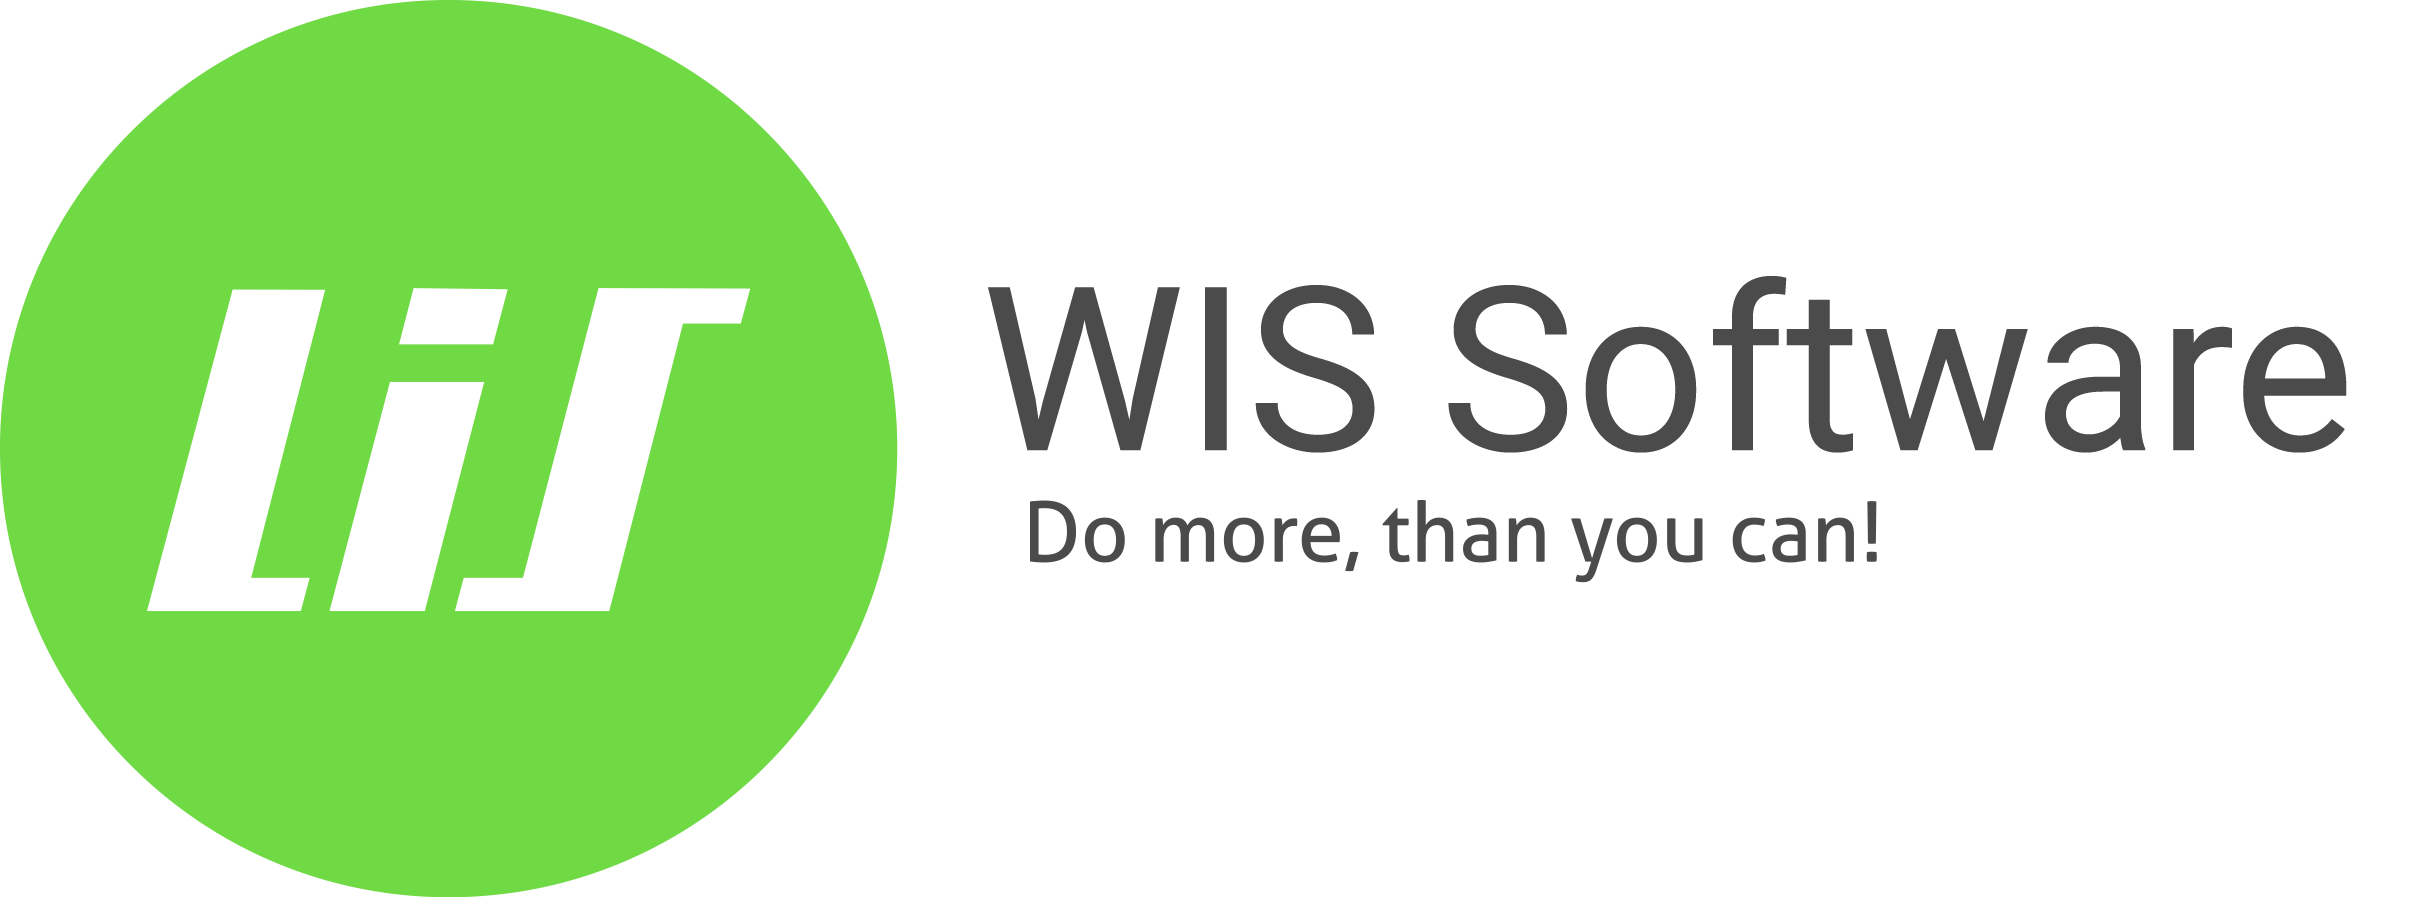 Wishttps://wis.software